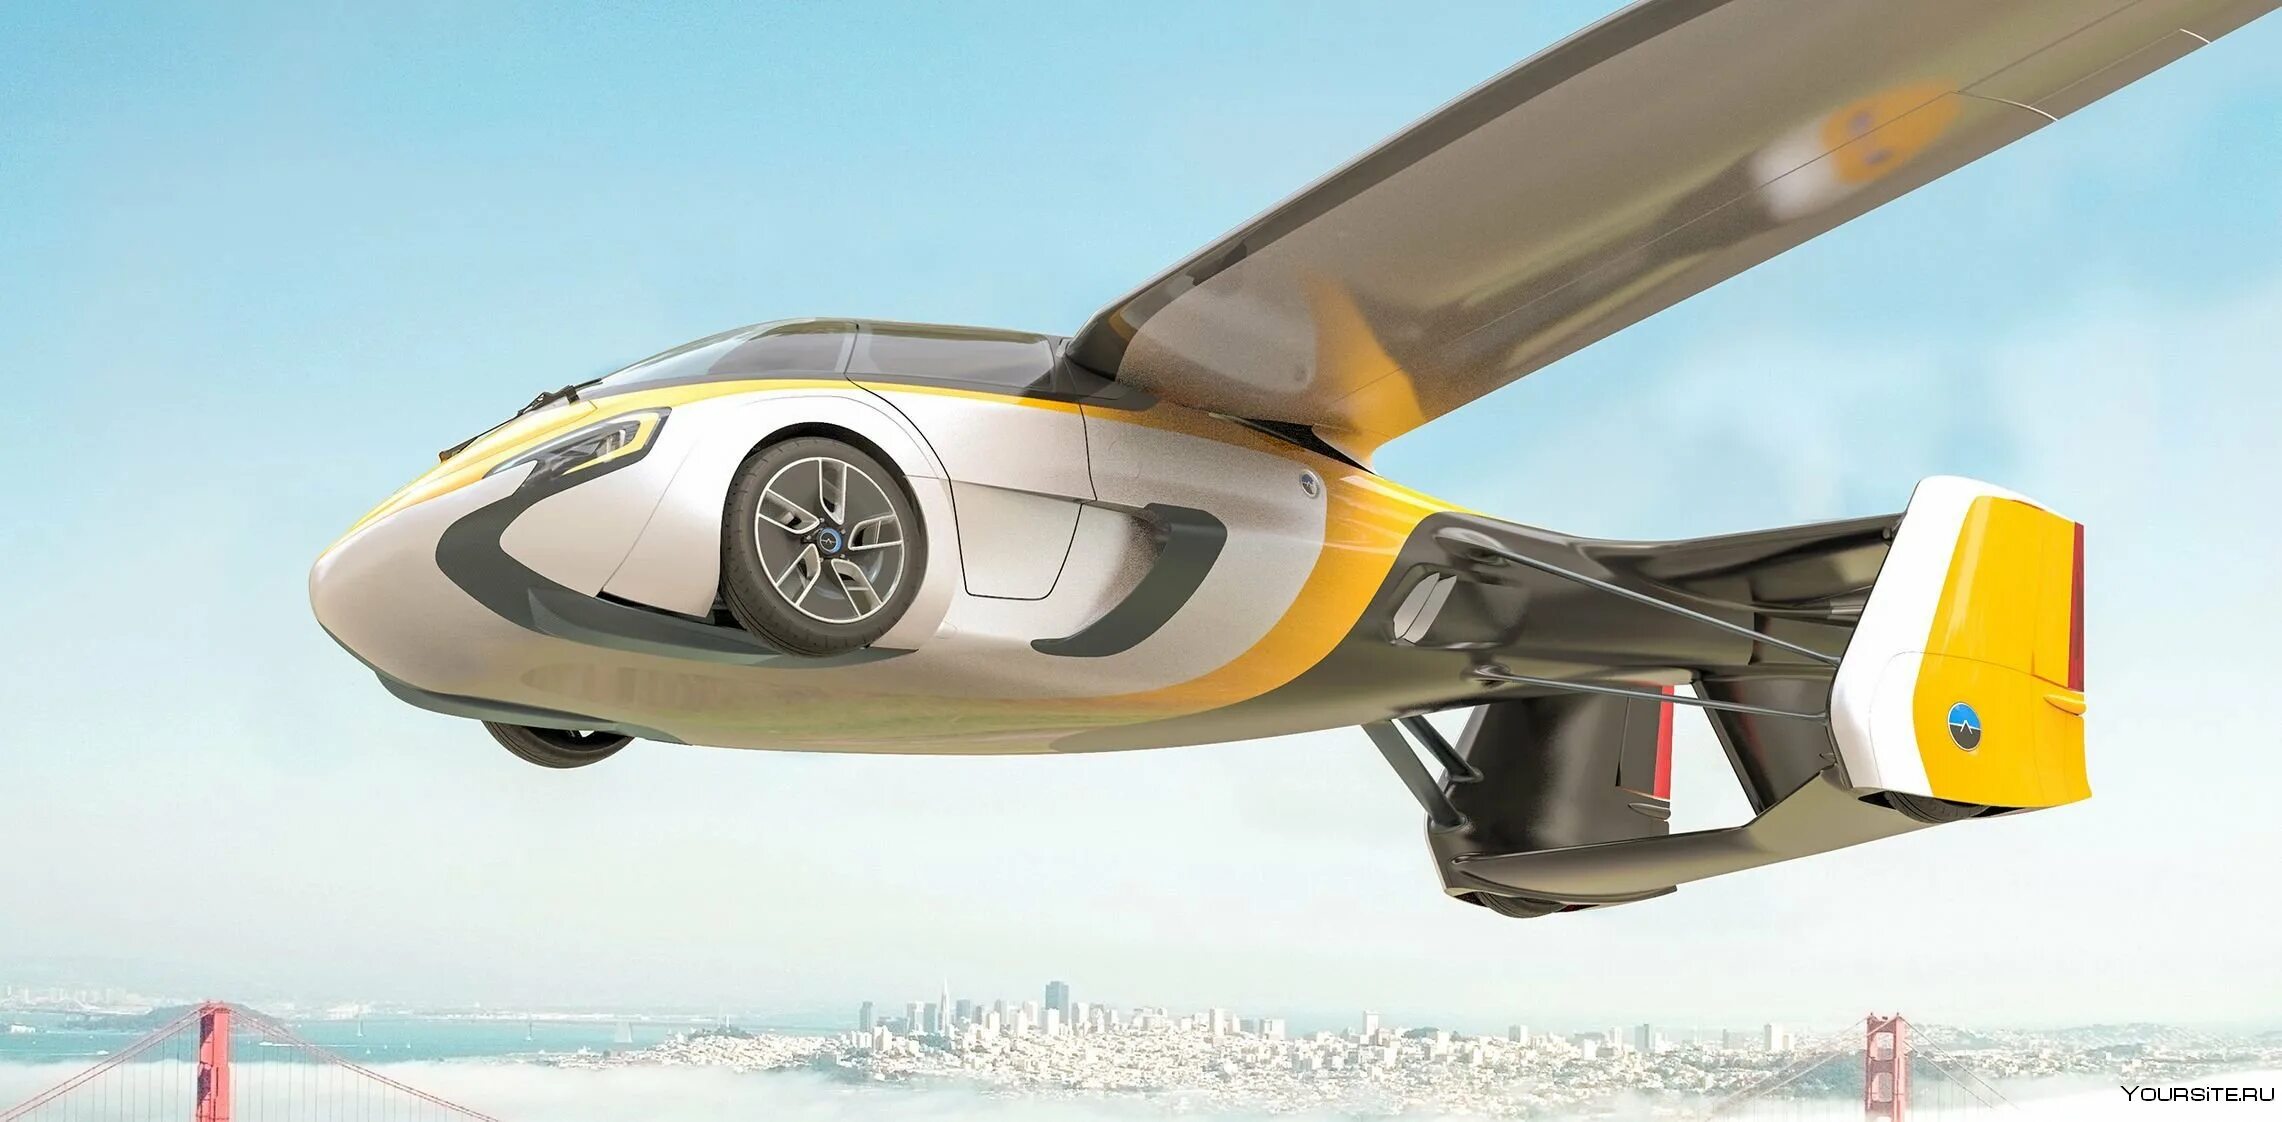 Включи машины летают. Летающая машина. Машины будущего. Летающие машины будущего. Летающий автомобиль будущего.